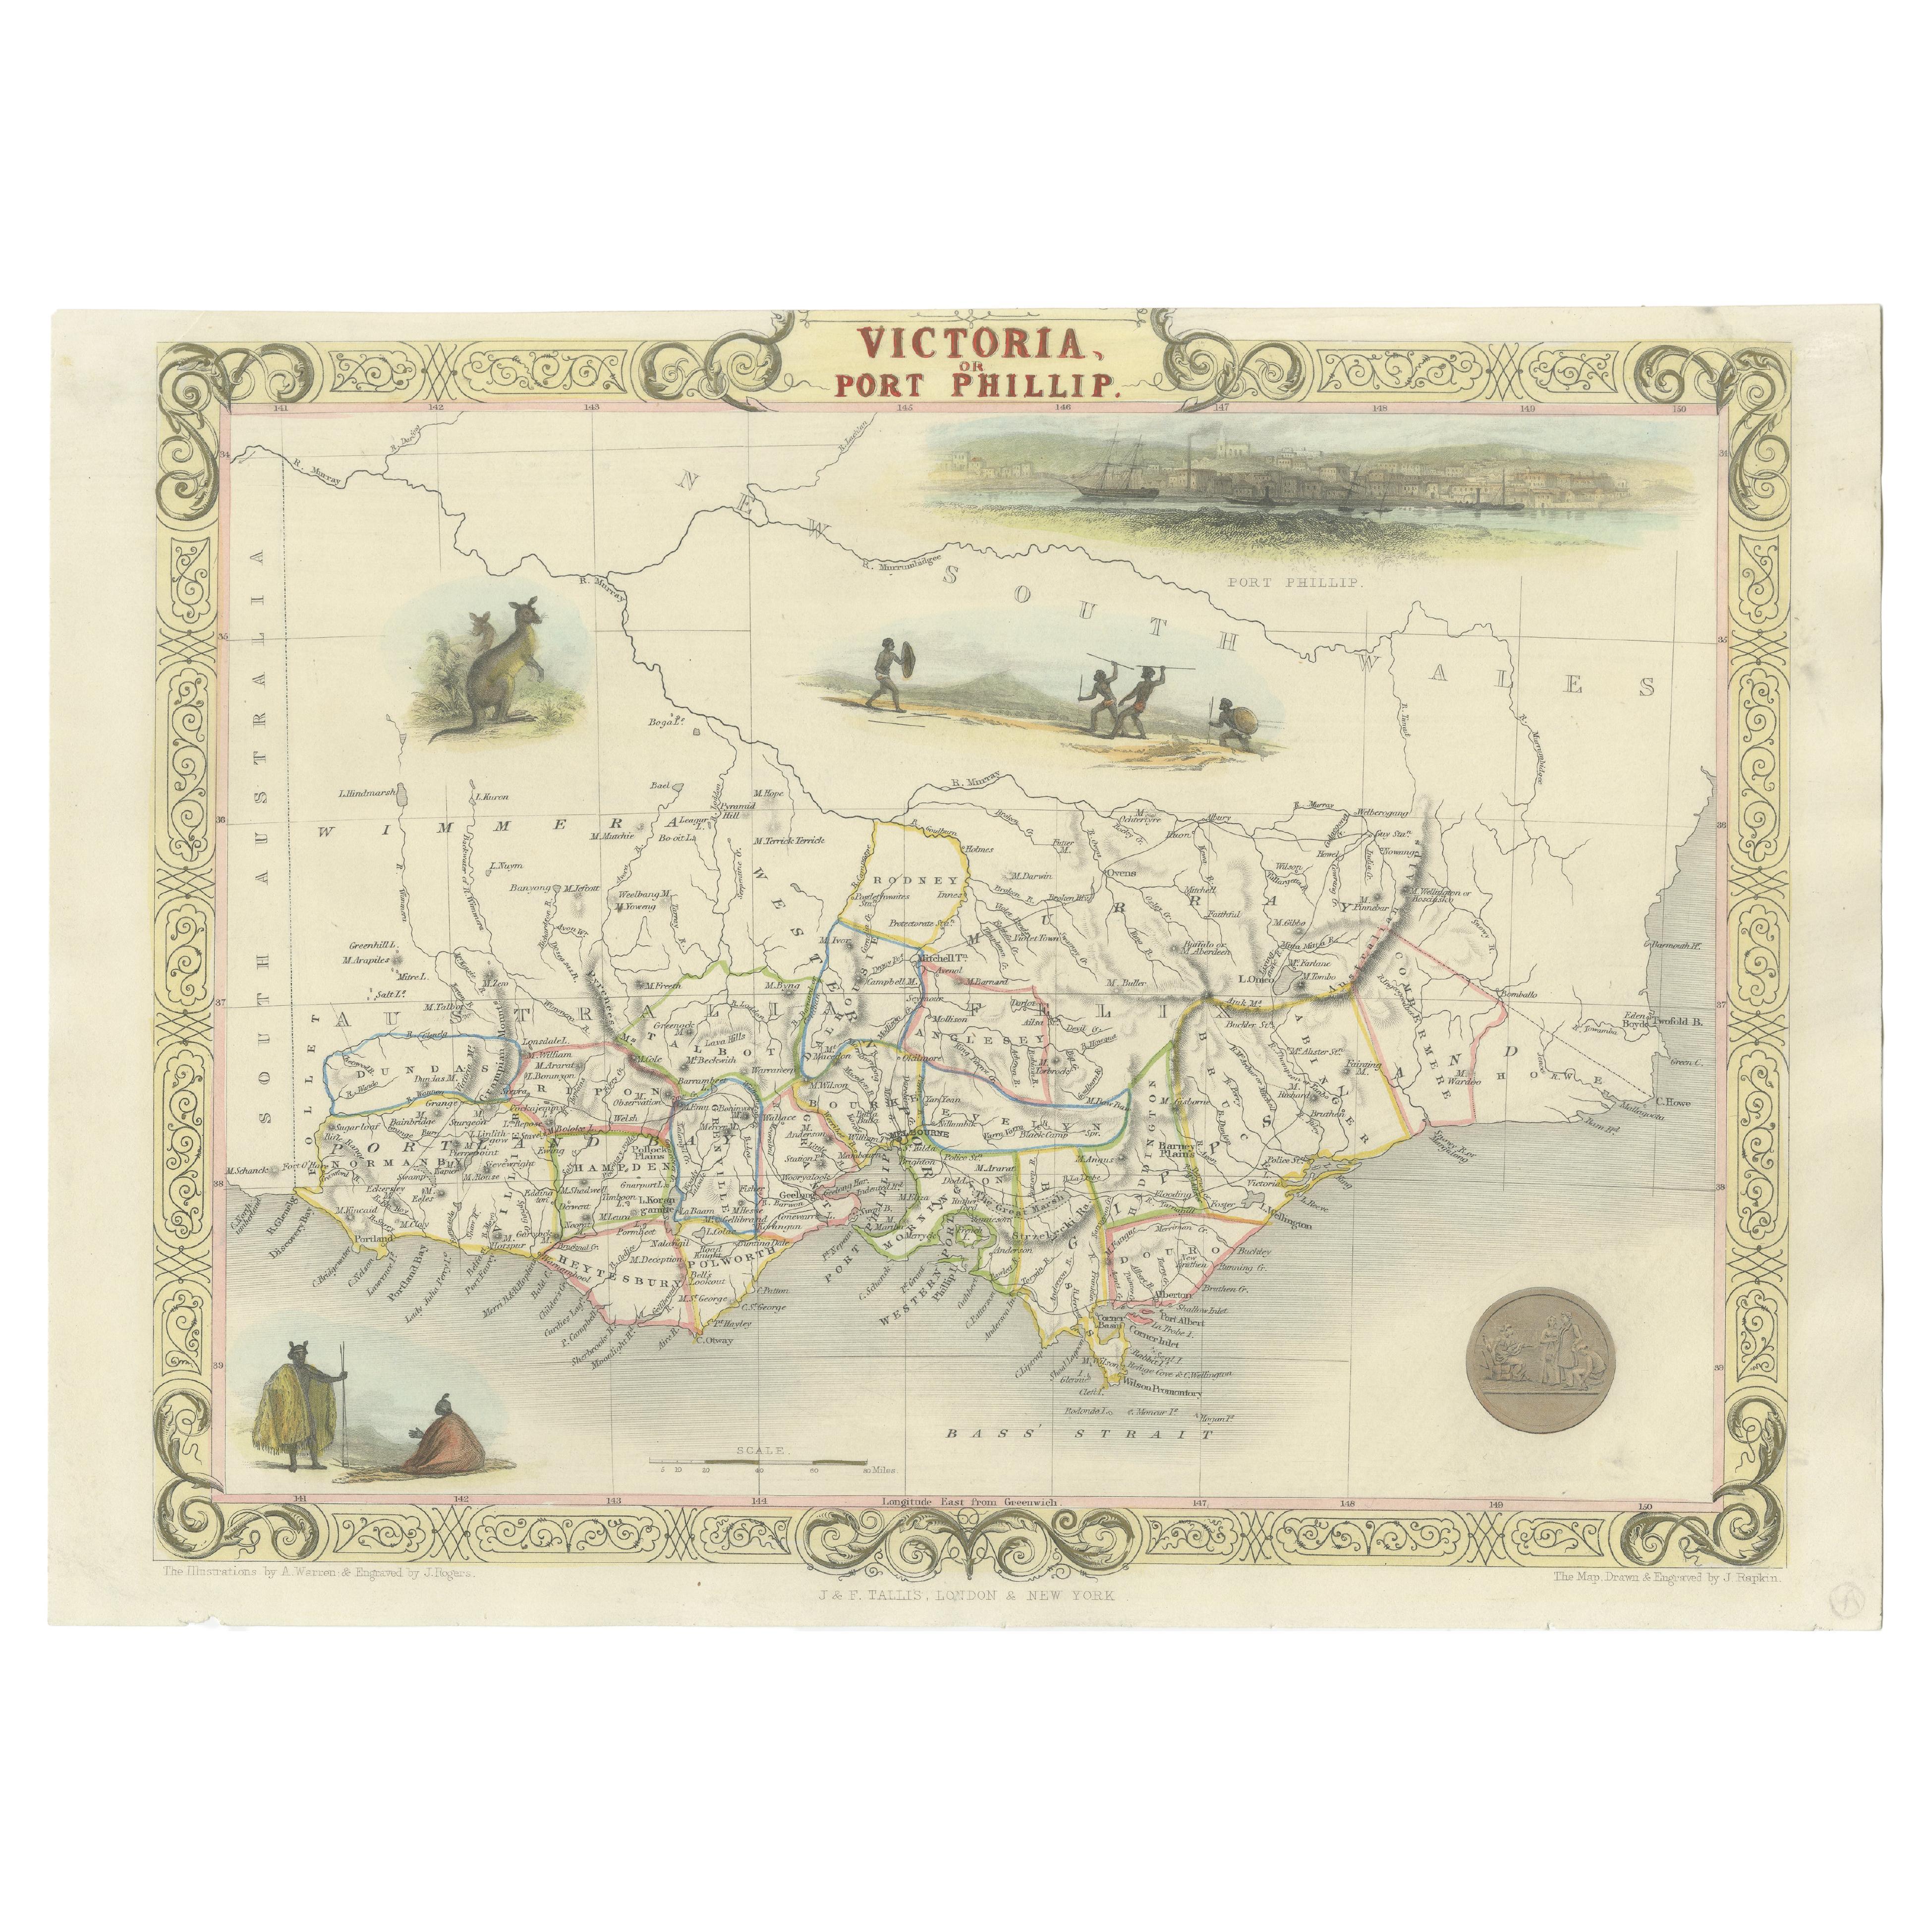 Carte ancienne de Victoria, ou Port Phillip en Australie, vers 1850